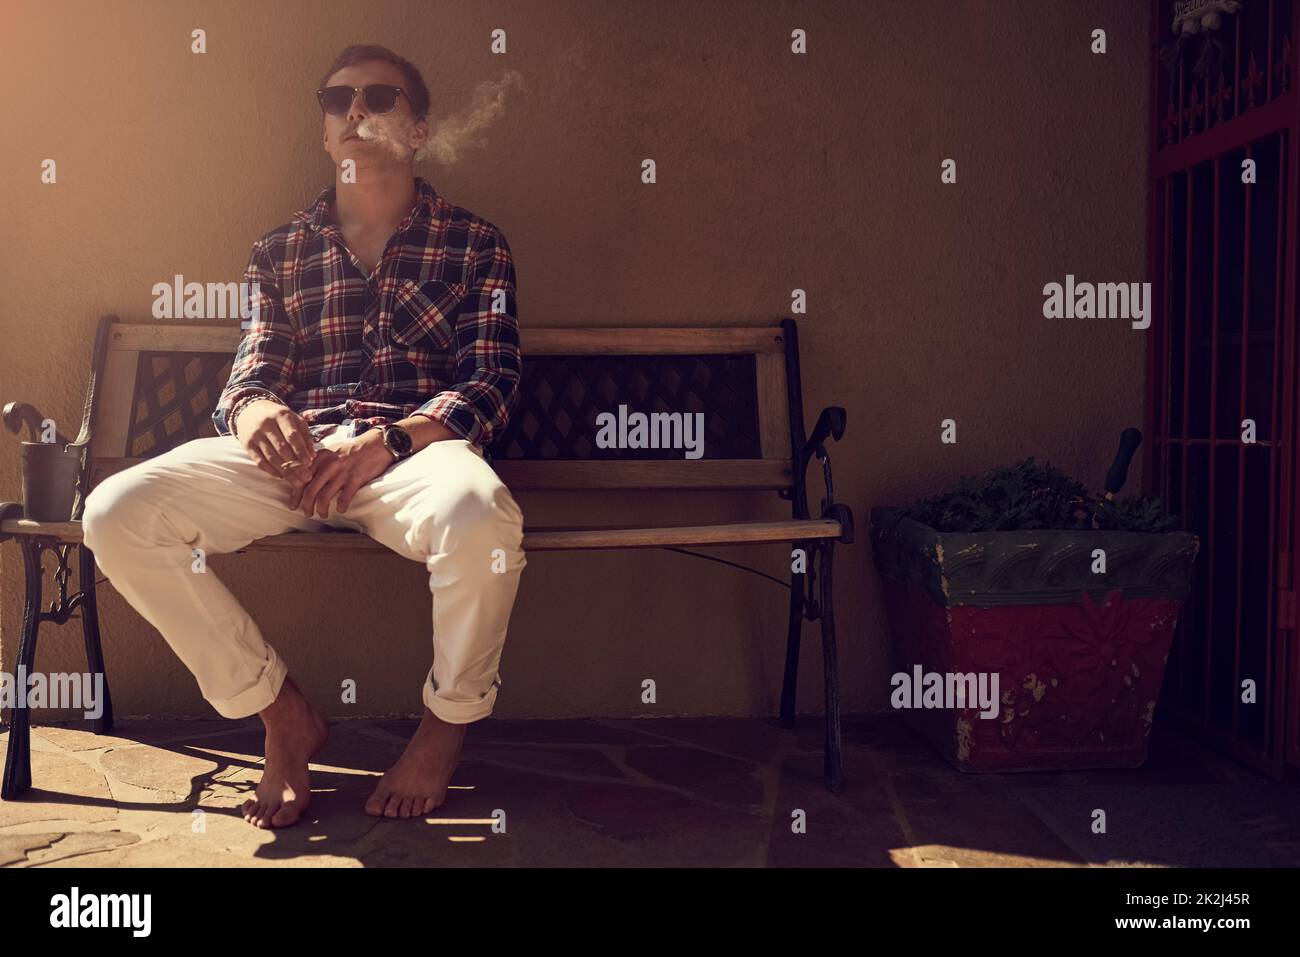 Prendre une bouffée dans la véranda. Photo d'un jeune homme assis sur un banc à l'extérieur et fumant une cigarette. Banque D'Images